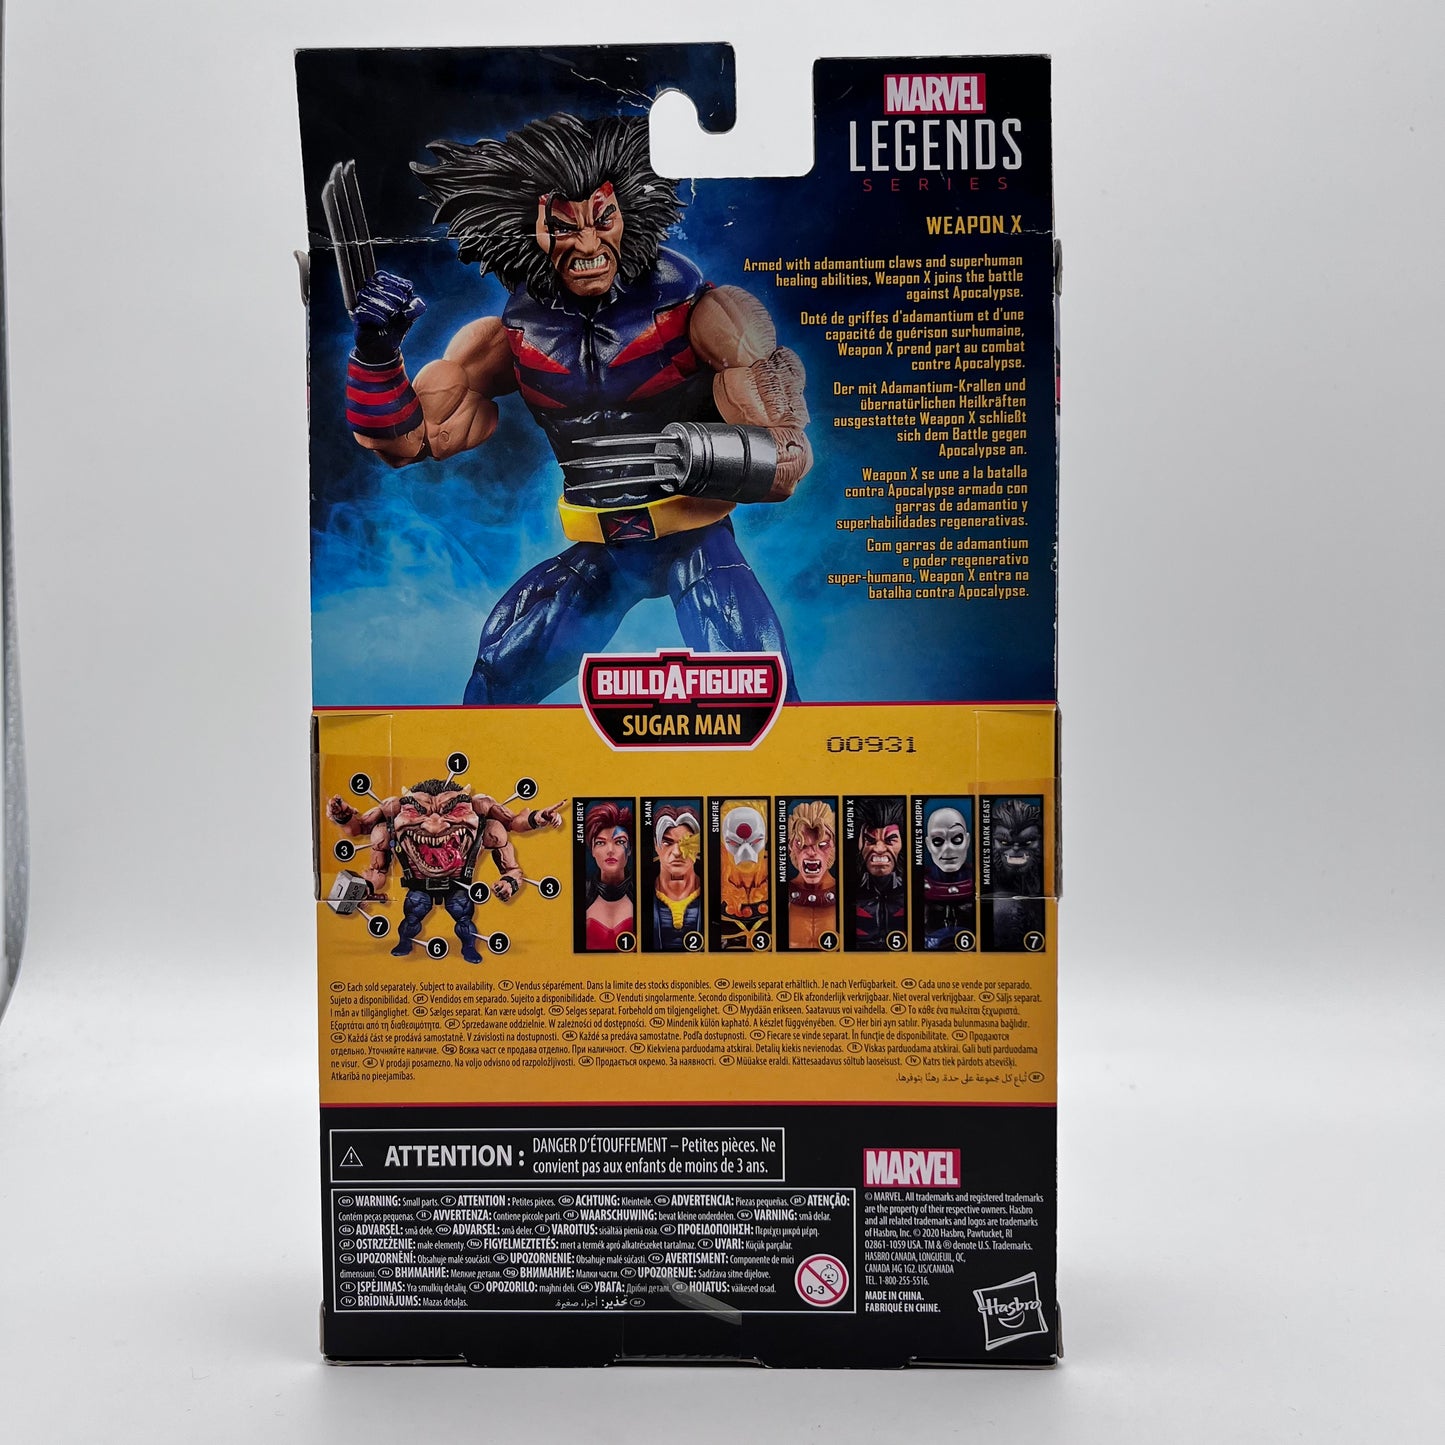 Hasbro Marvel Legends Series X-Men WEAPON-X